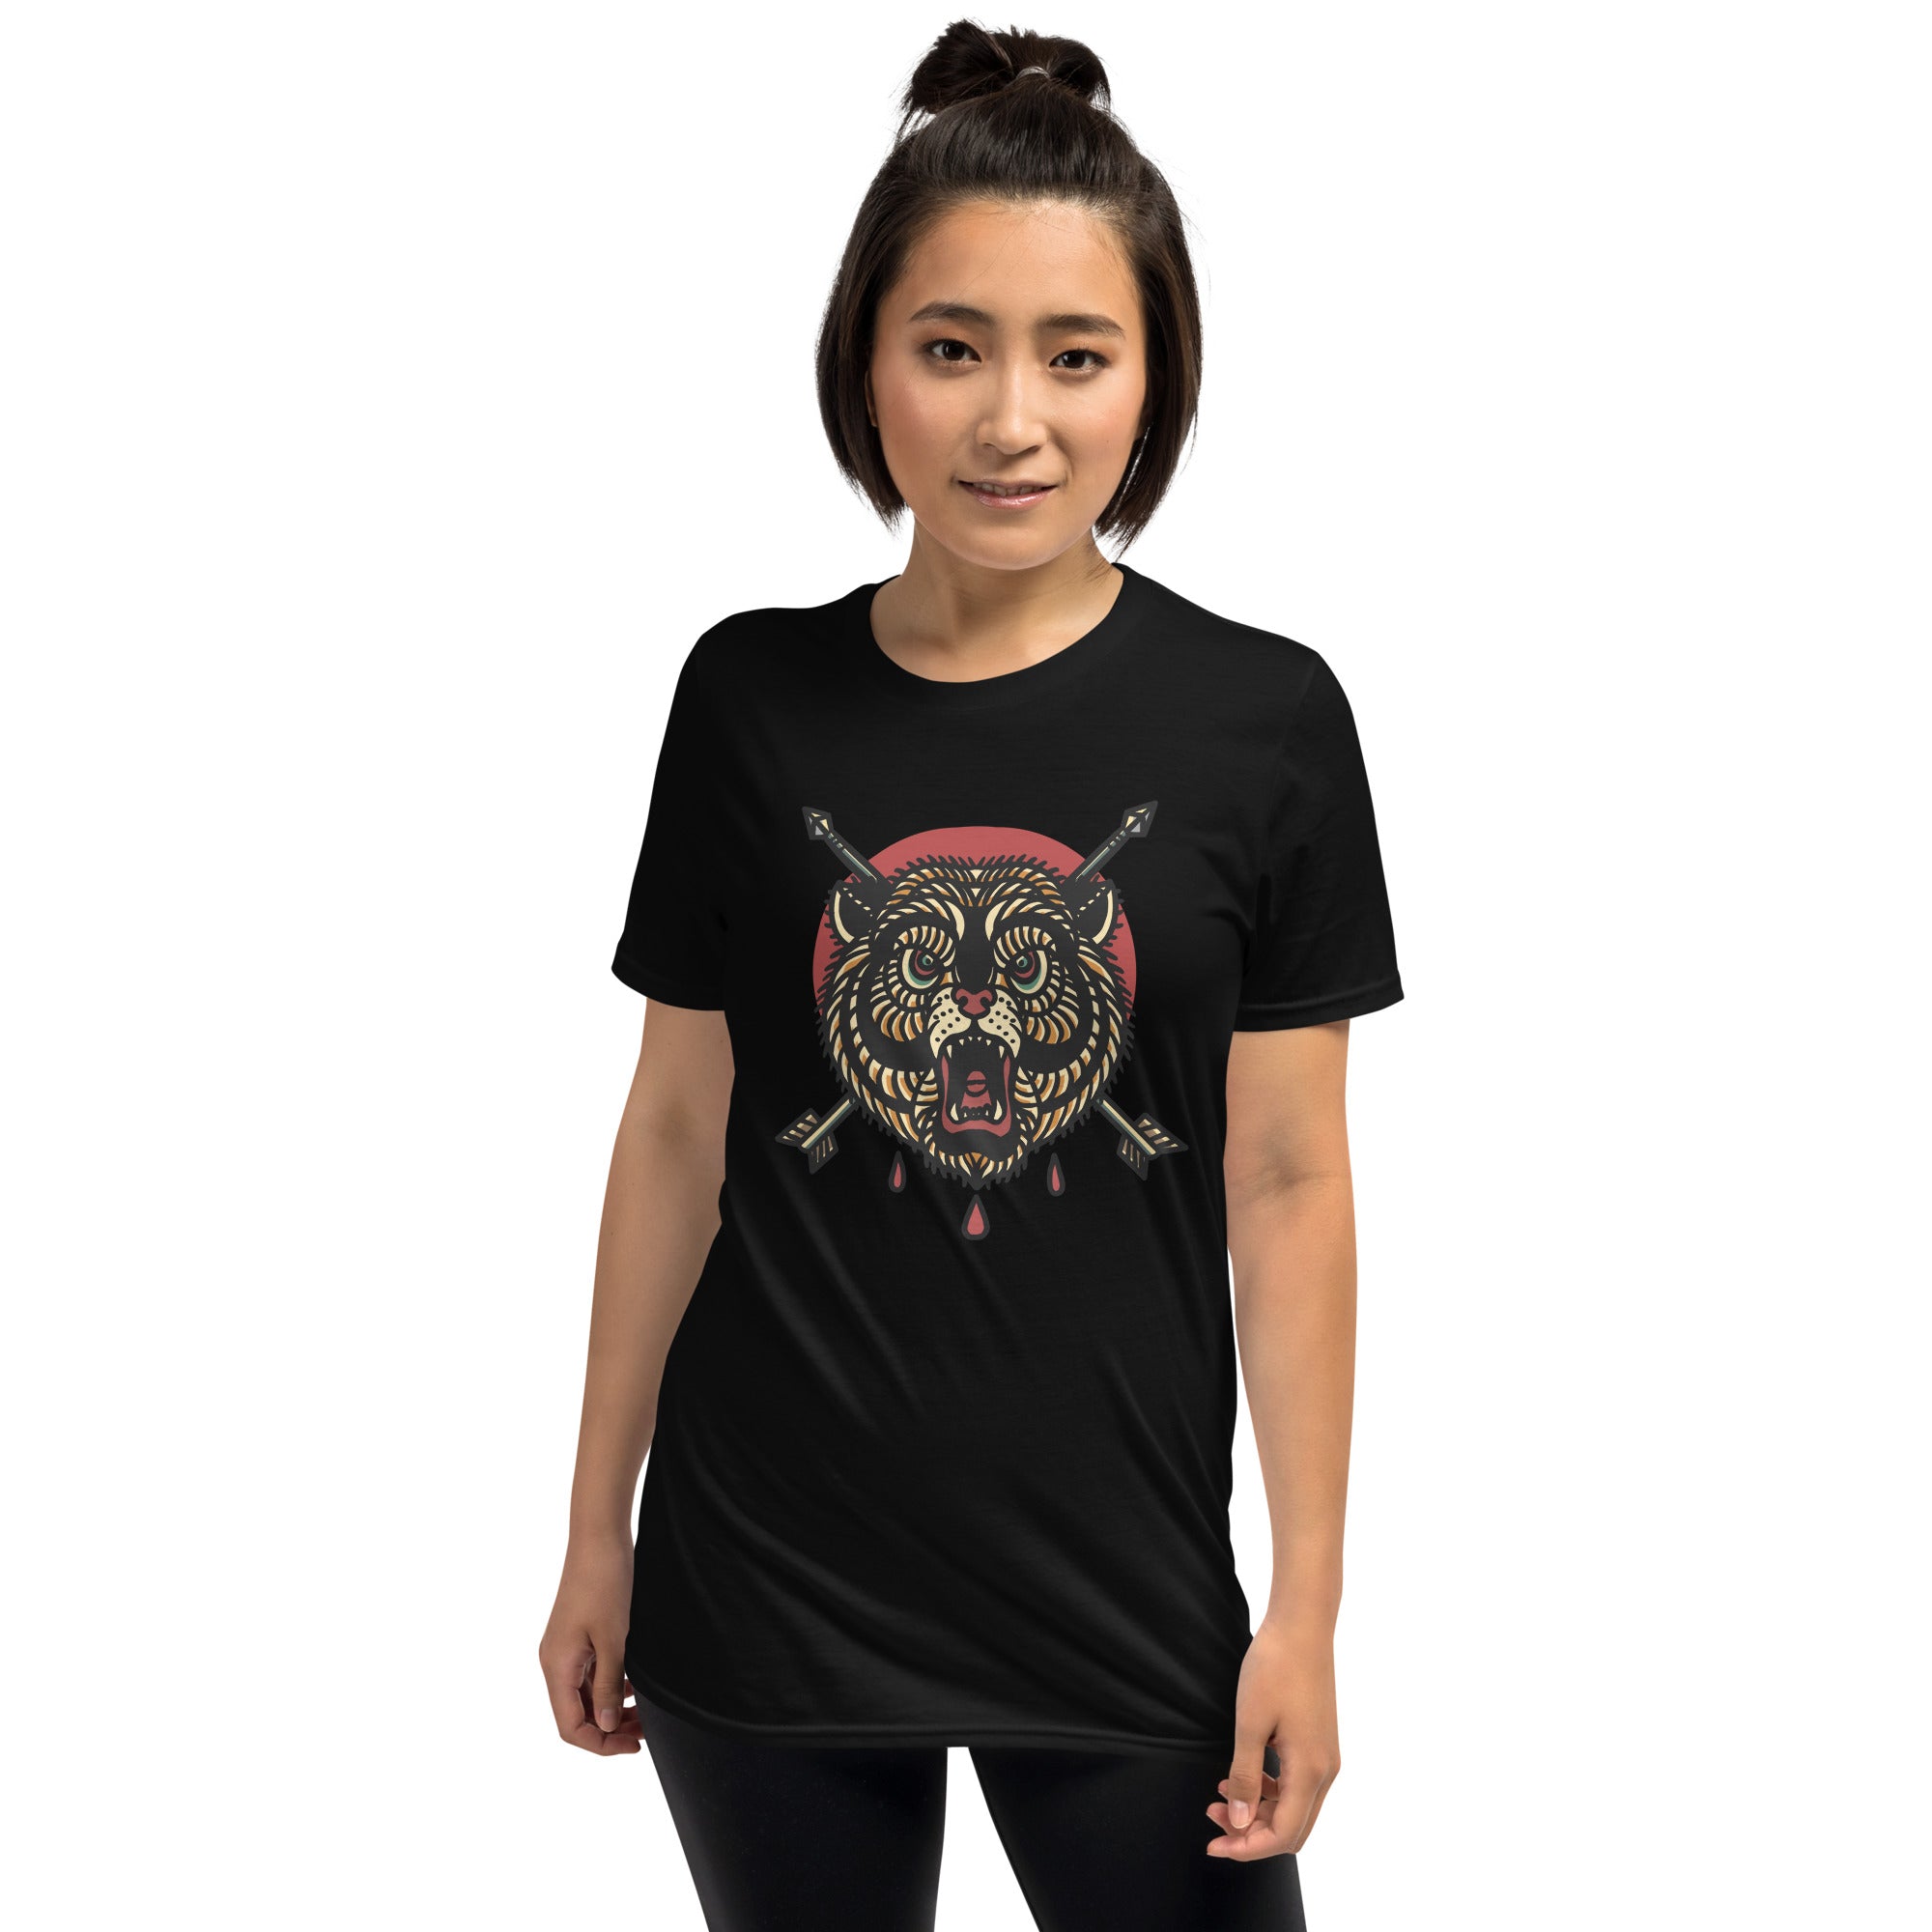 Bear And Arrow - Short-Sleeve Unisex T-Shirt